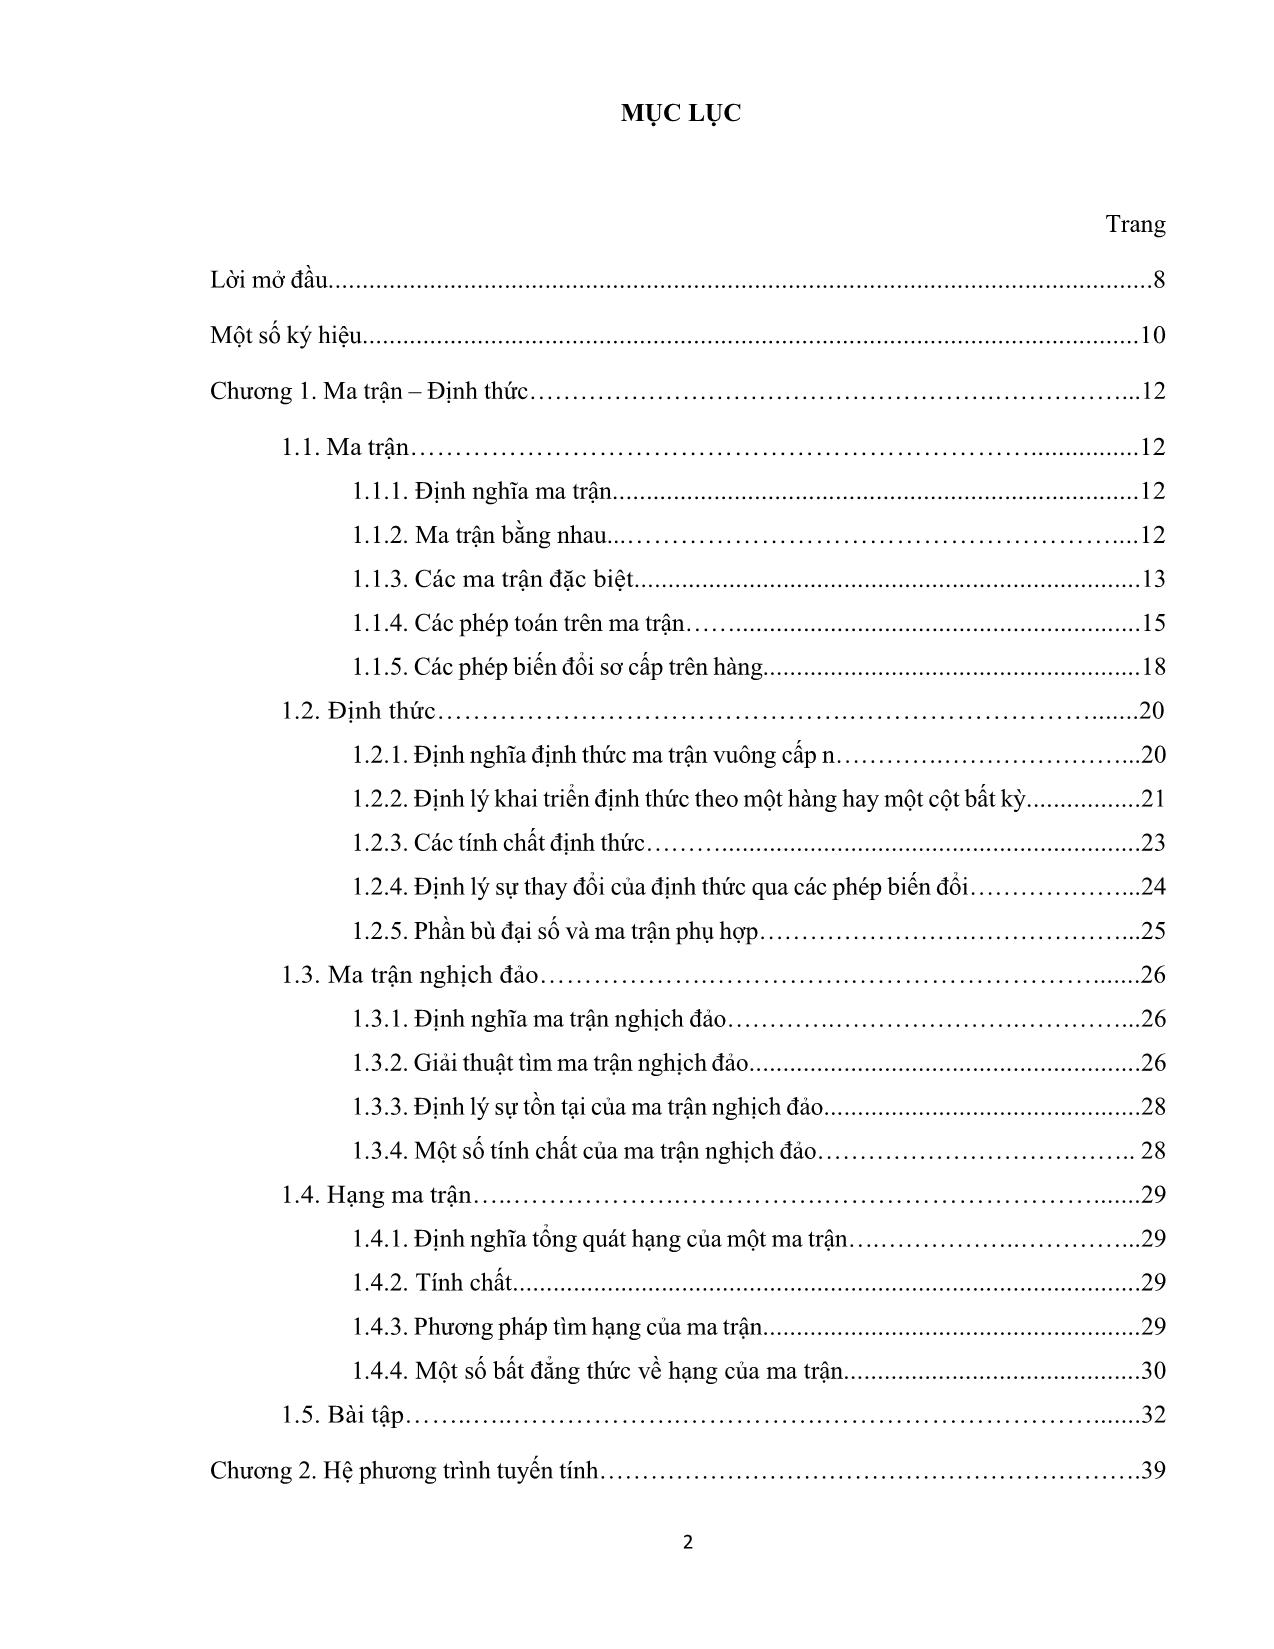 Giáo trình Toán cao cấp (Phần 1) - Nguyễn Huy Hoàng trang 2